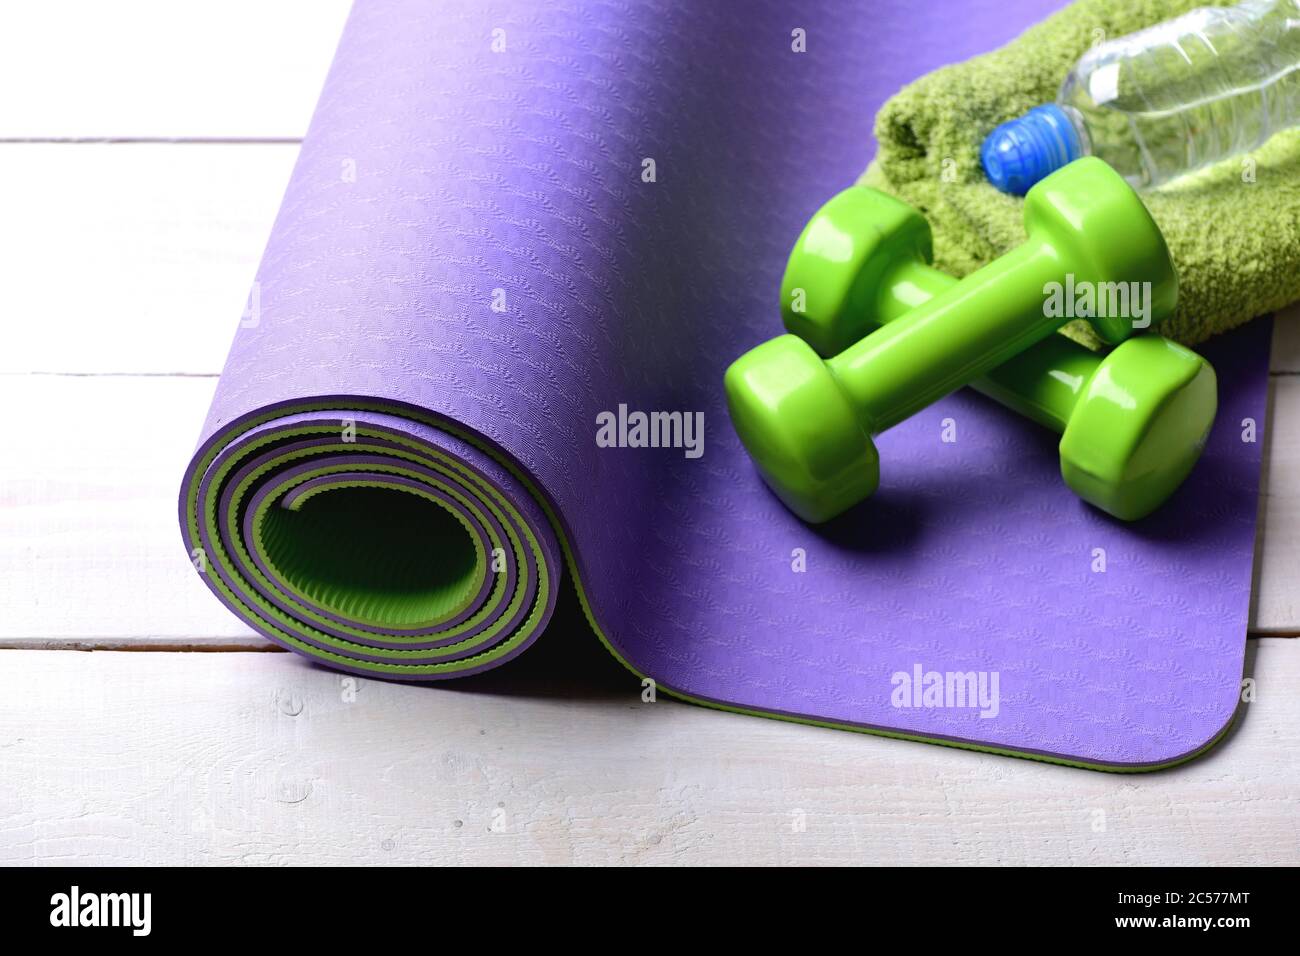 https://c8.alamy.com/compes/2c577mt/mancuernas-de-plastico-verde-sobre-fondo-de-madera-clara-deporte-y-estilo-de-vida-saludable-equipos-de-entrenamiento-y-entrenamiento-barbells-cerca-de-una-botella-de-agua-y-toalla-suave-tumbada-en-una-alfombra-de-yoga-purpura-2c577mt.jpg